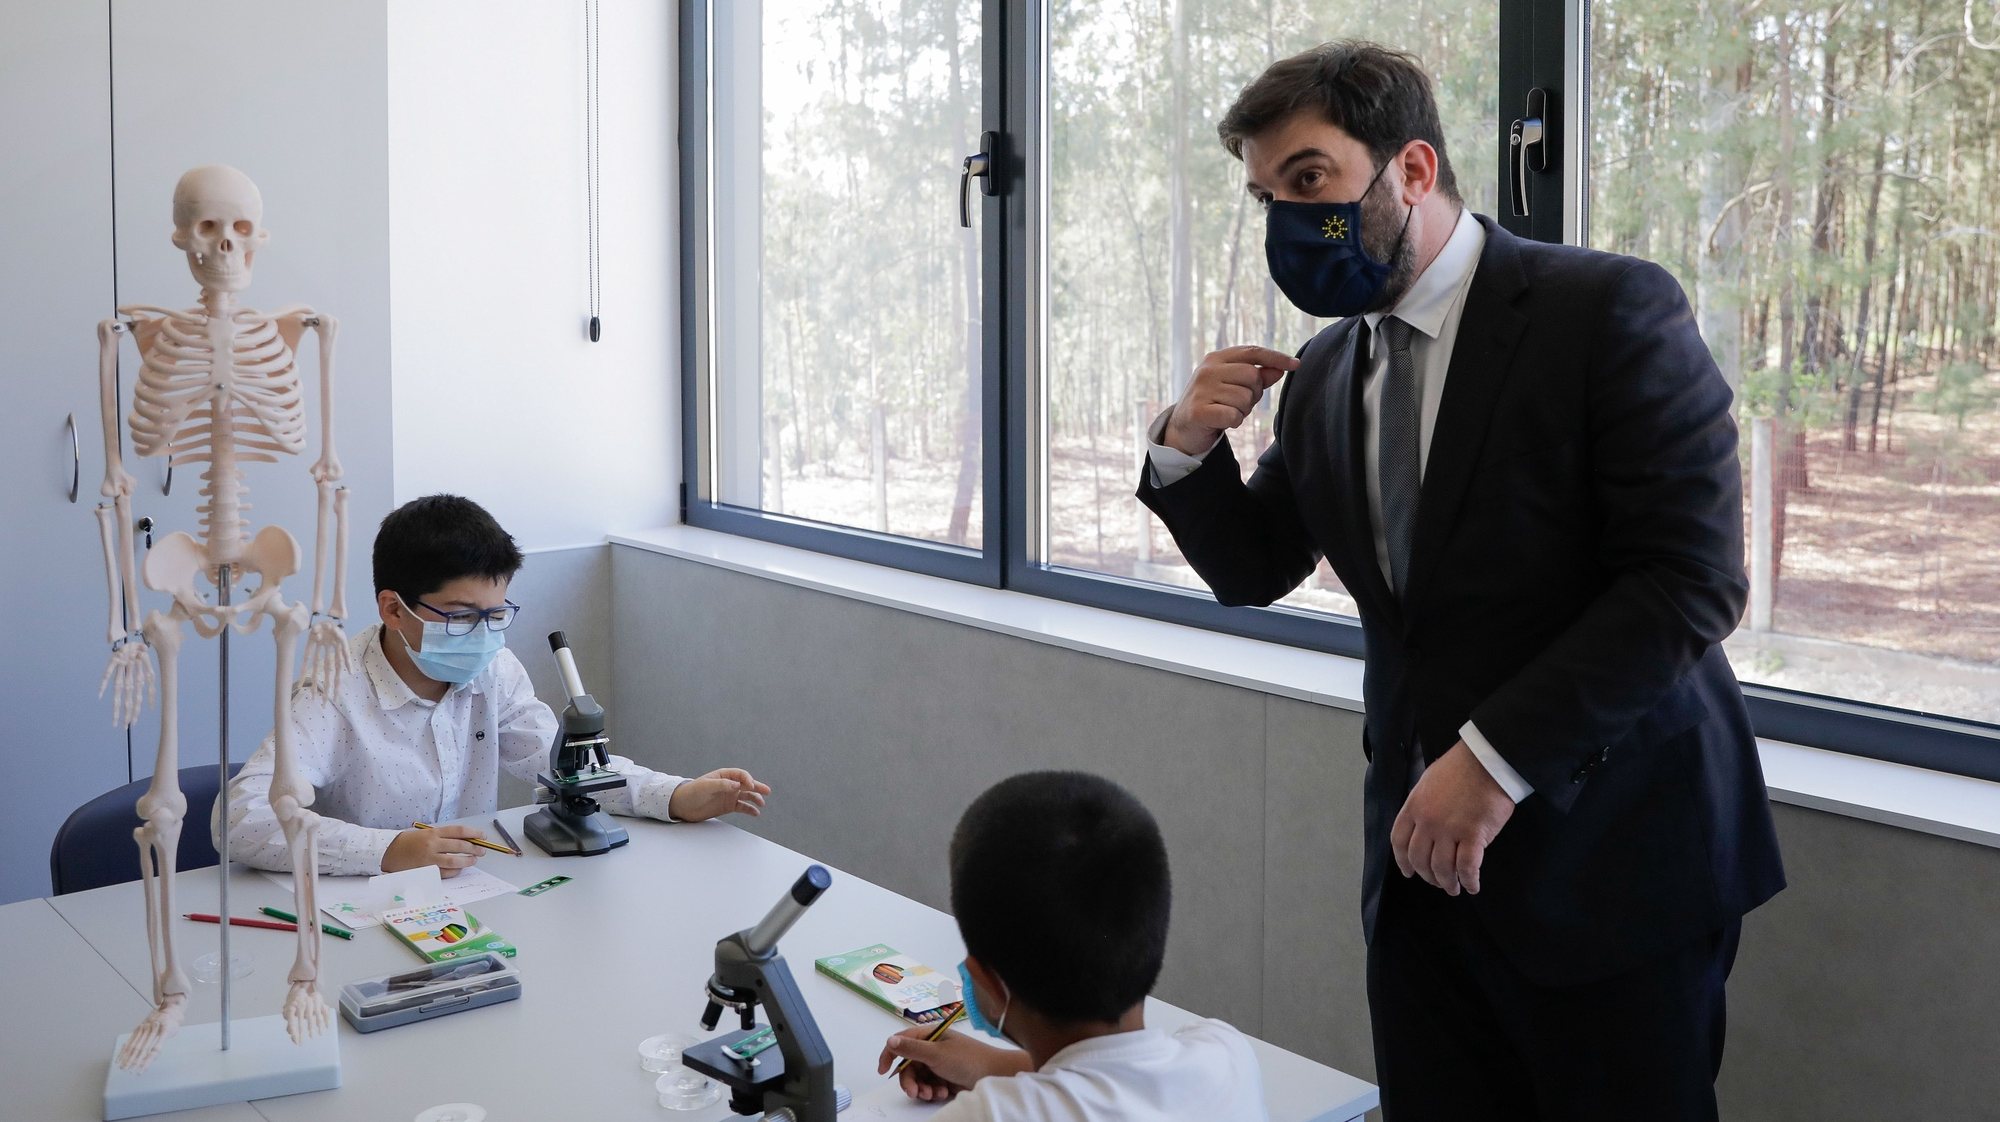 O ministro da Educação, Tiago Brandão Rodrigues (D), conversa com alunos durante a visita e inauguração do Centro Escolar de Carvoeira, Caxarias, Ourém, 05 de abril de 2021. PAULO CUNHA /LUSA